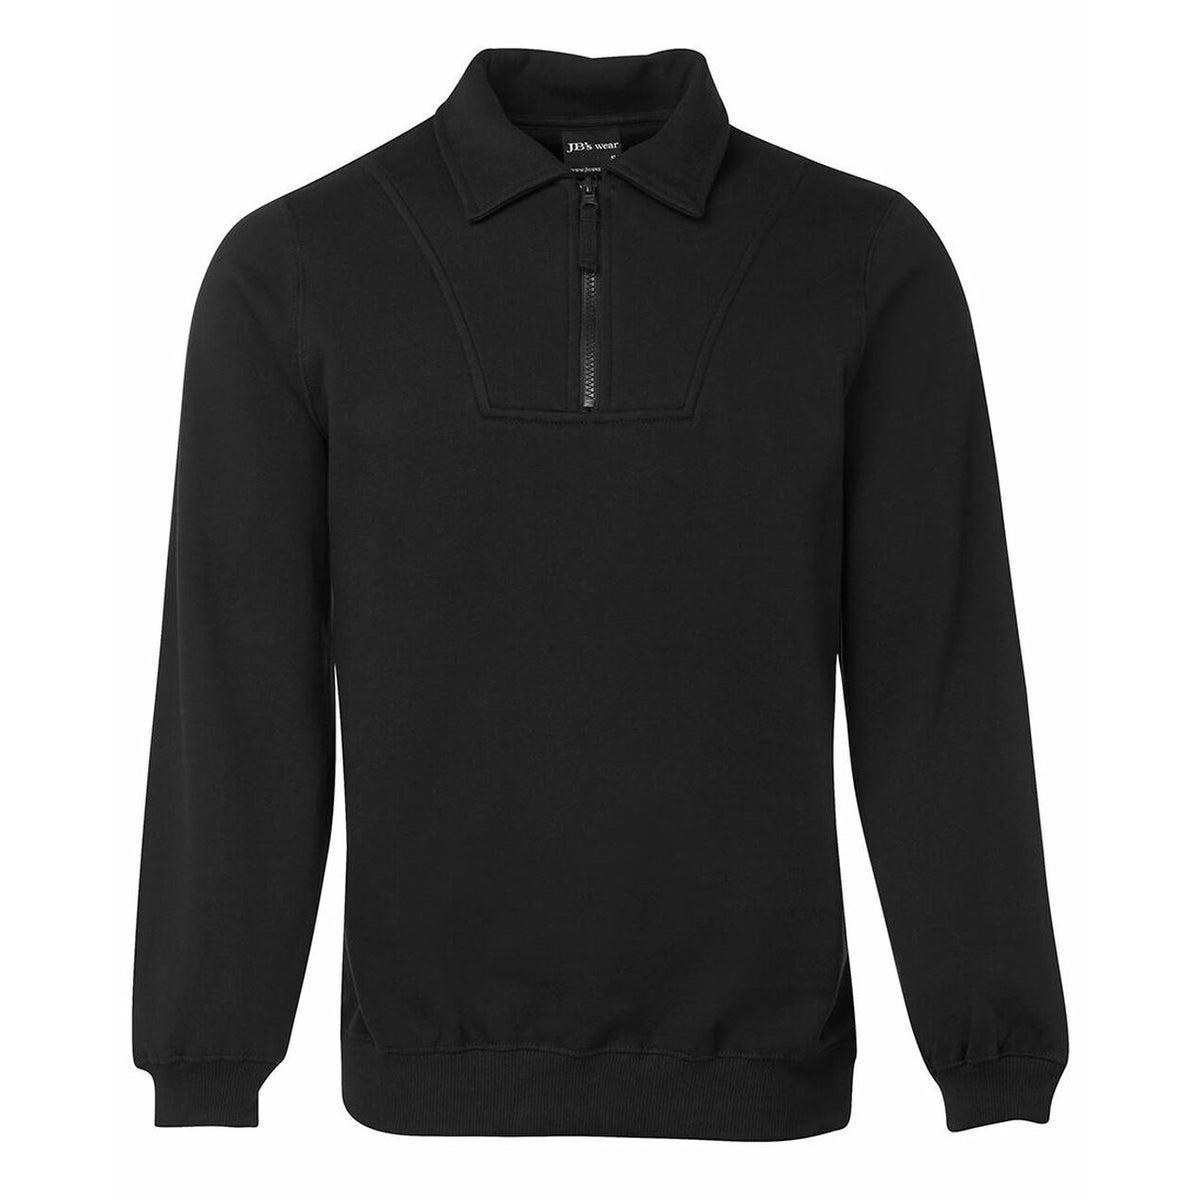 JB's Wear Half Zip Fleecy Sweater in Black